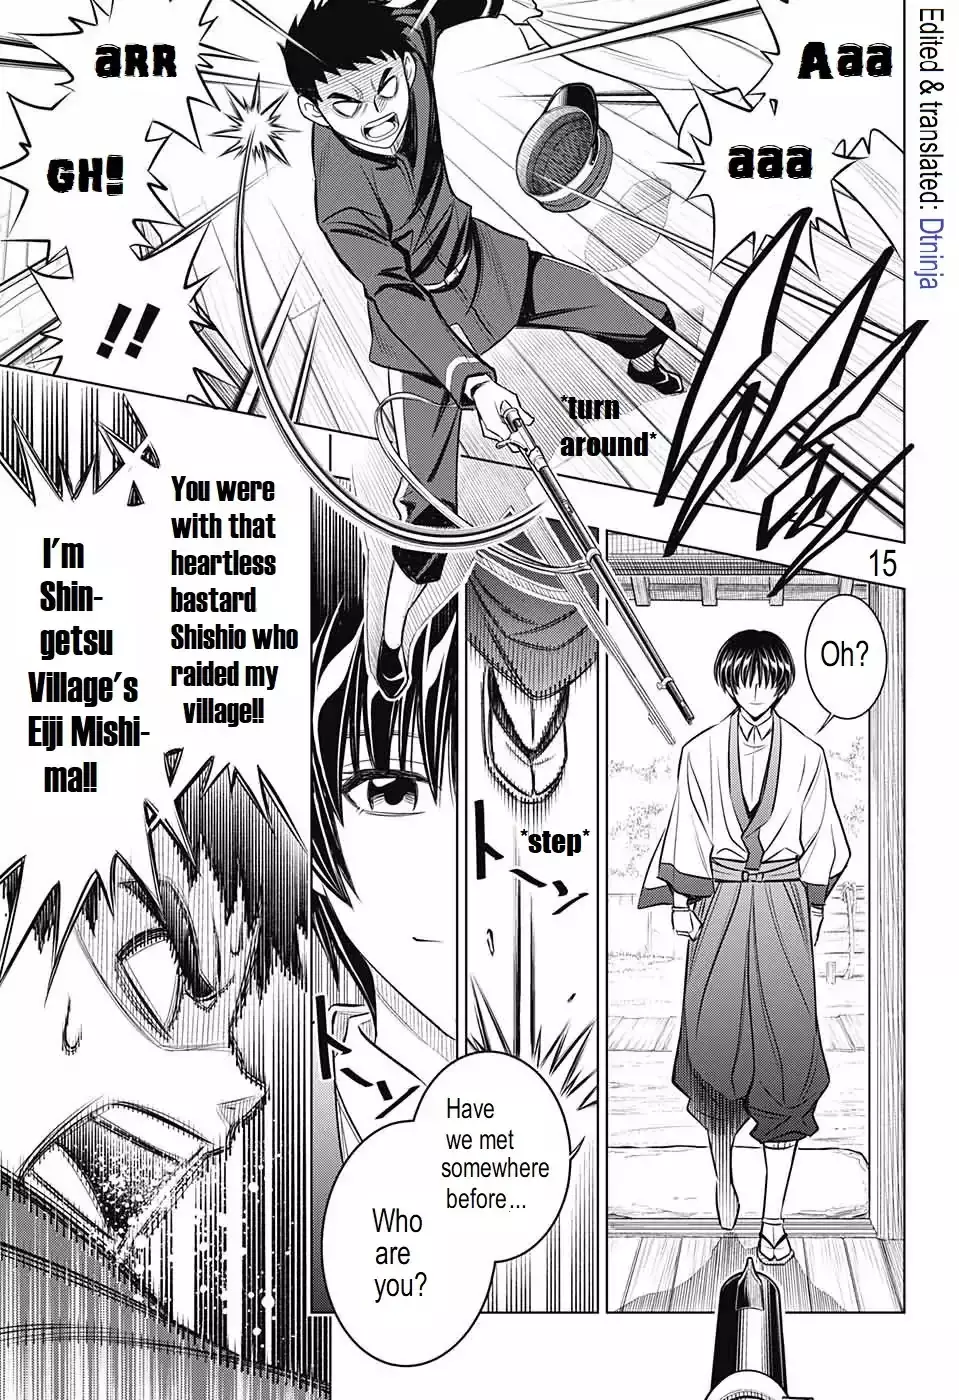 Rurouni Kenshin: Hokkaido Arc - 16 page 15